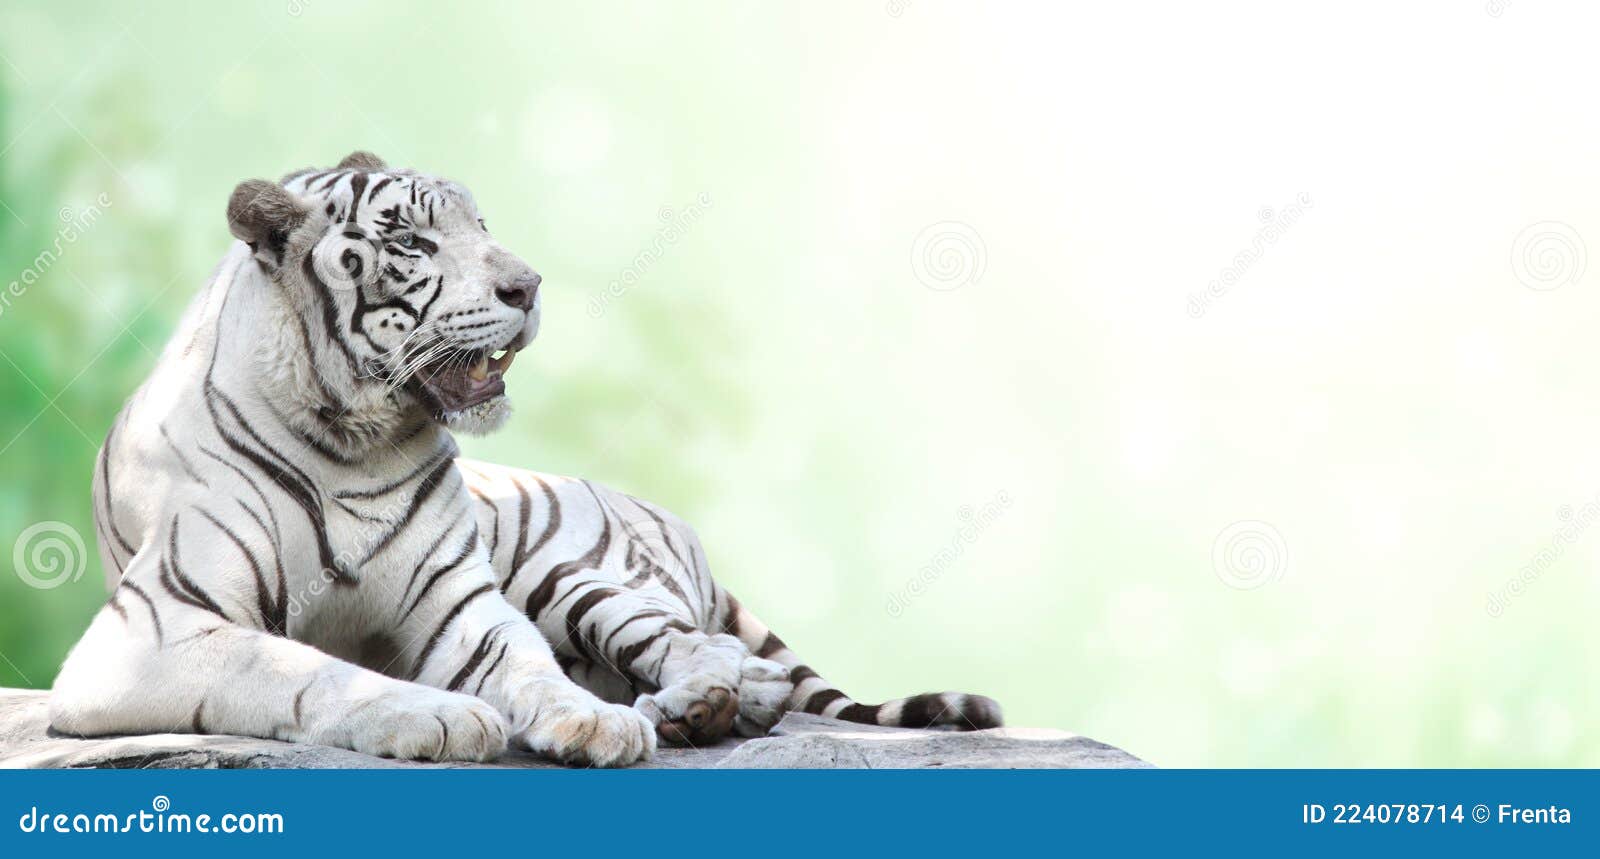 Cờ hoạt hình con hổ trắng nằm làm từ sợi vải mềm mại, đem lại cảm giác thoải mái, dễ chịu cho người dùng. Thiết kế đơn giản nhưng vẫn nổi bật, có thể trang trí cho không gian ấm cúng của gia đình bạn. 